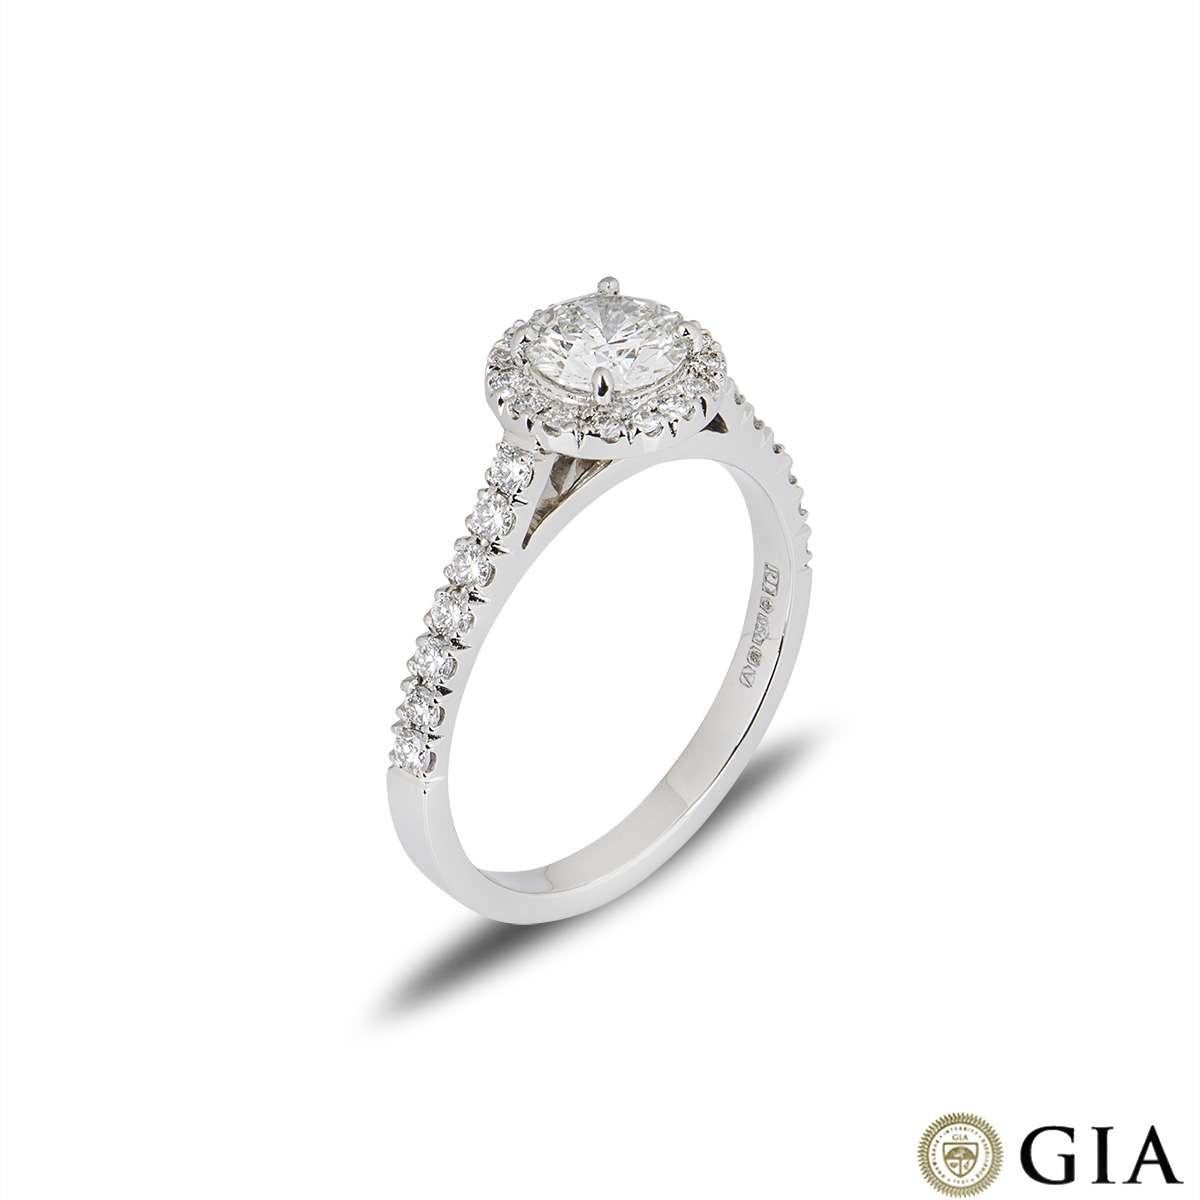 Ein schöner Diamantring aus Platin. Der Ring ist mit einem natürlichen, sehr hellgrünen, runden Diamanten im Brillantschliff besetzt, der eine Reinheit von SI1 aufweist. Der Ring hat diamantbesetzte Schultern und einen Diamant-Halo von insgesamt